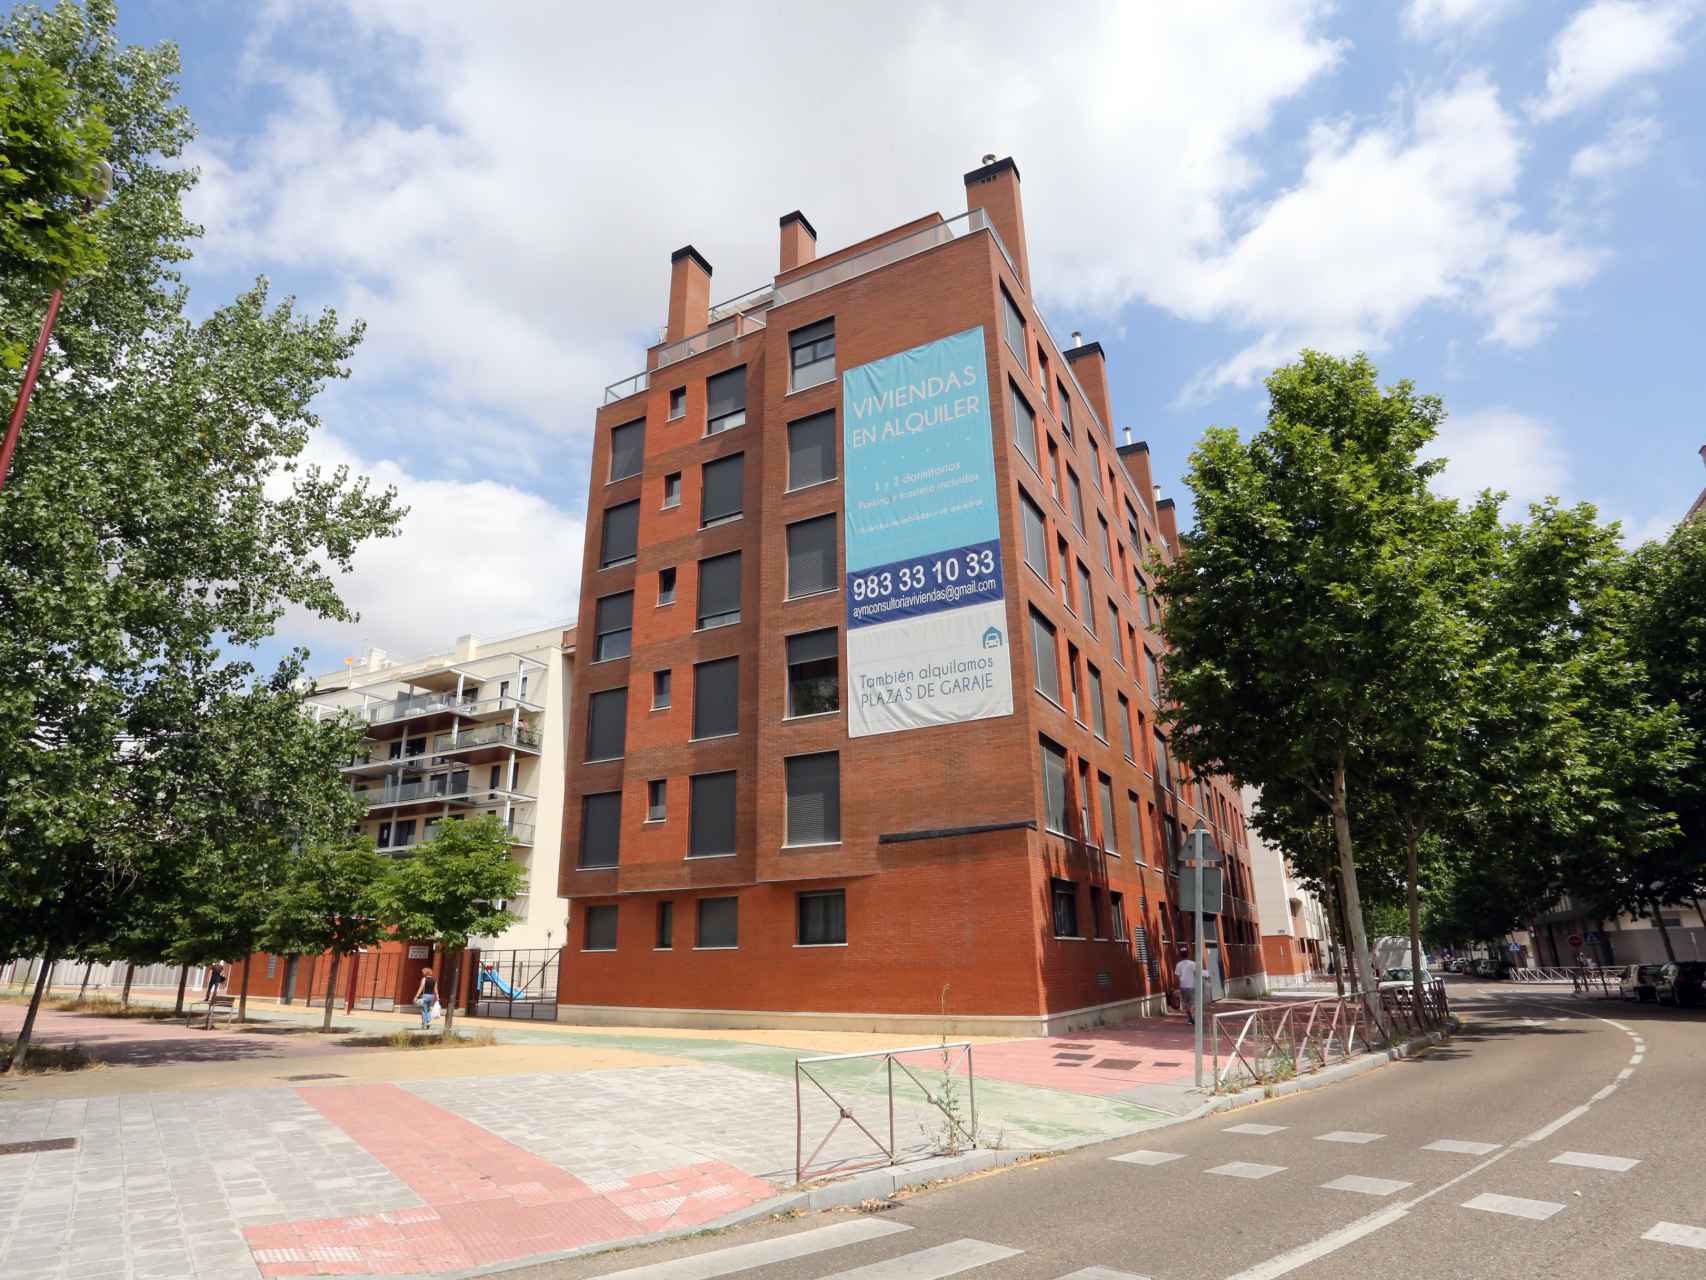 Un bloque de viviendas en alquiler en Castilla y León.